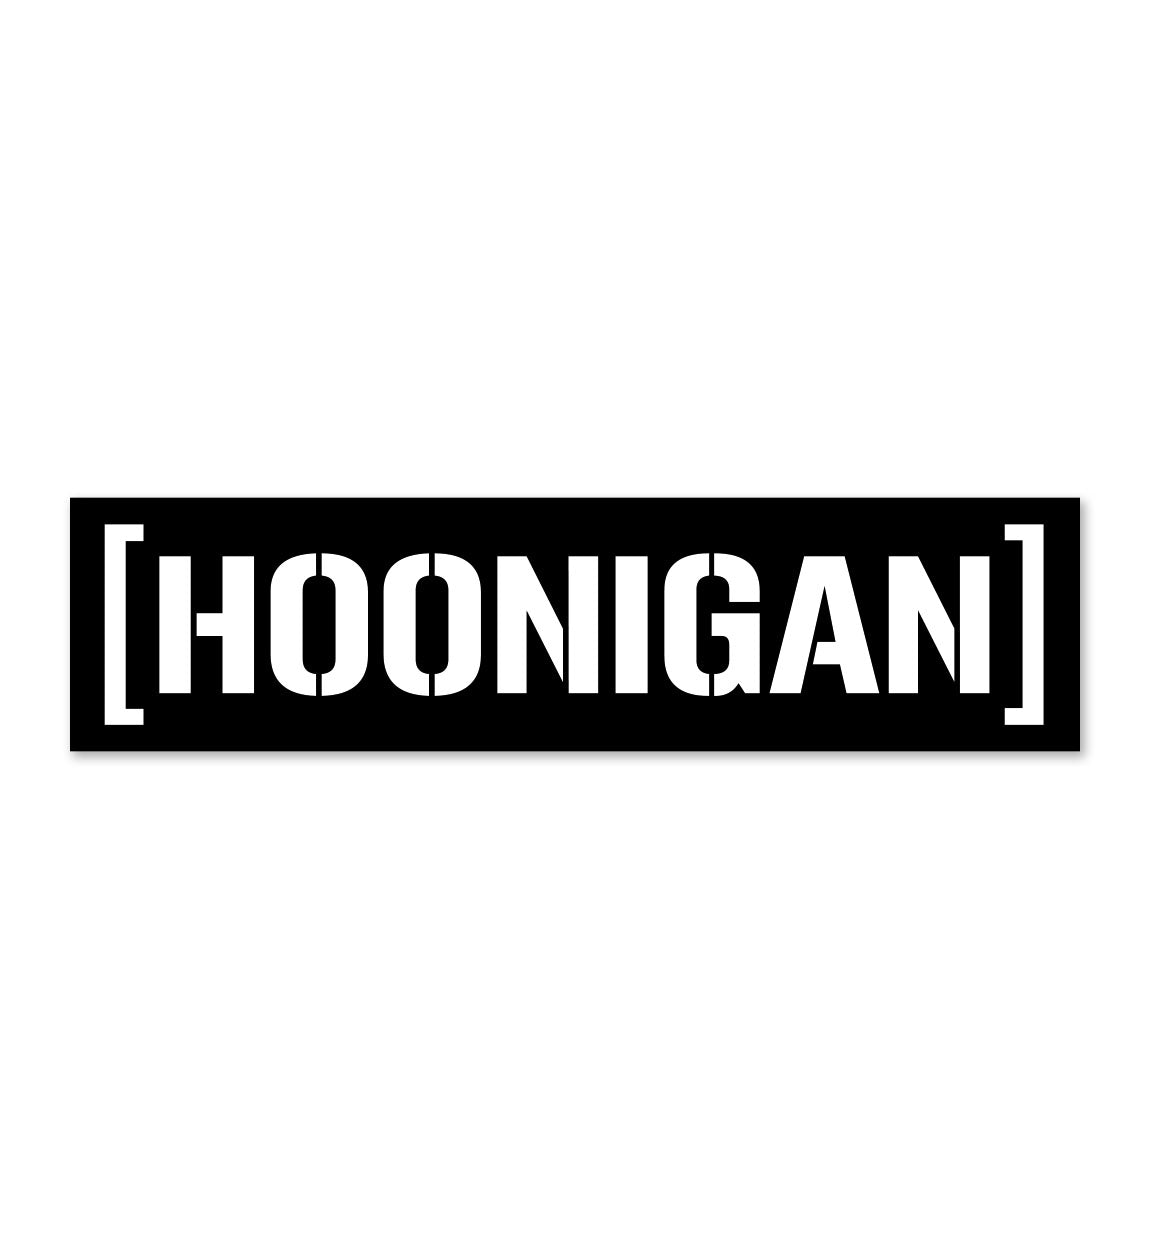 Hoonigan CENSOR BAR Sticker (10")